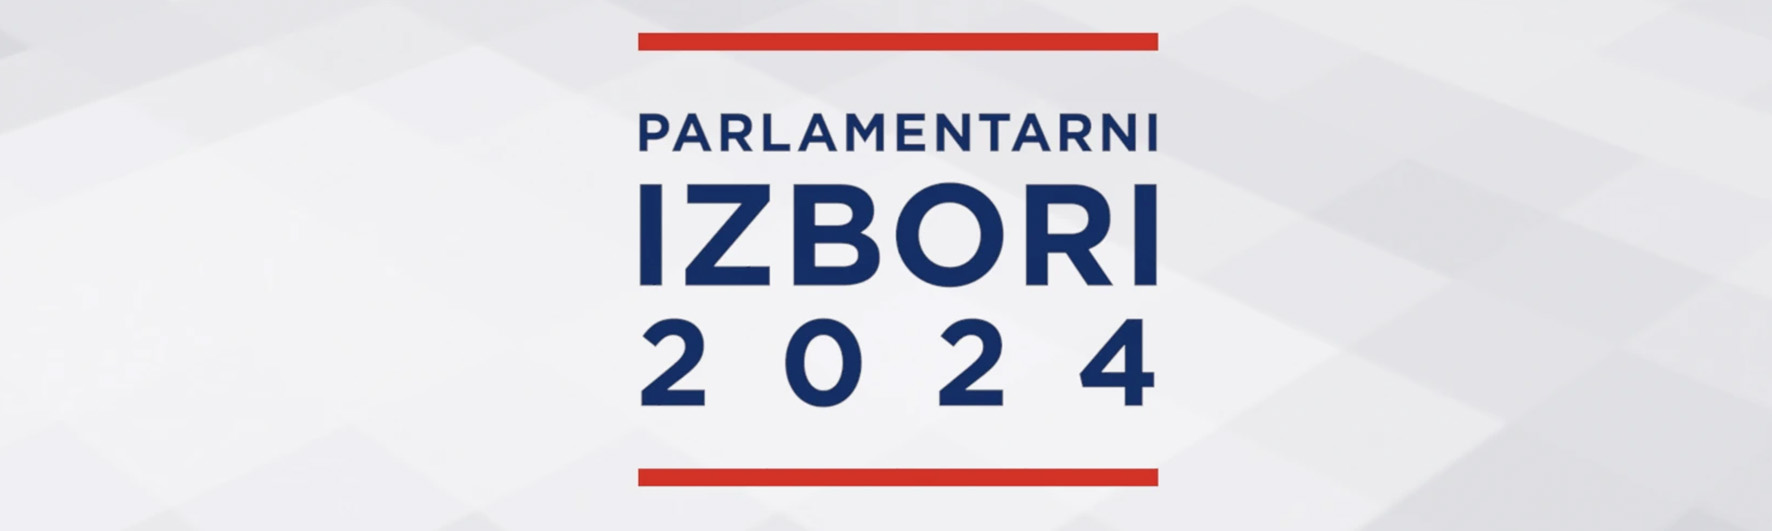 Parlamentarni izbori 2024.